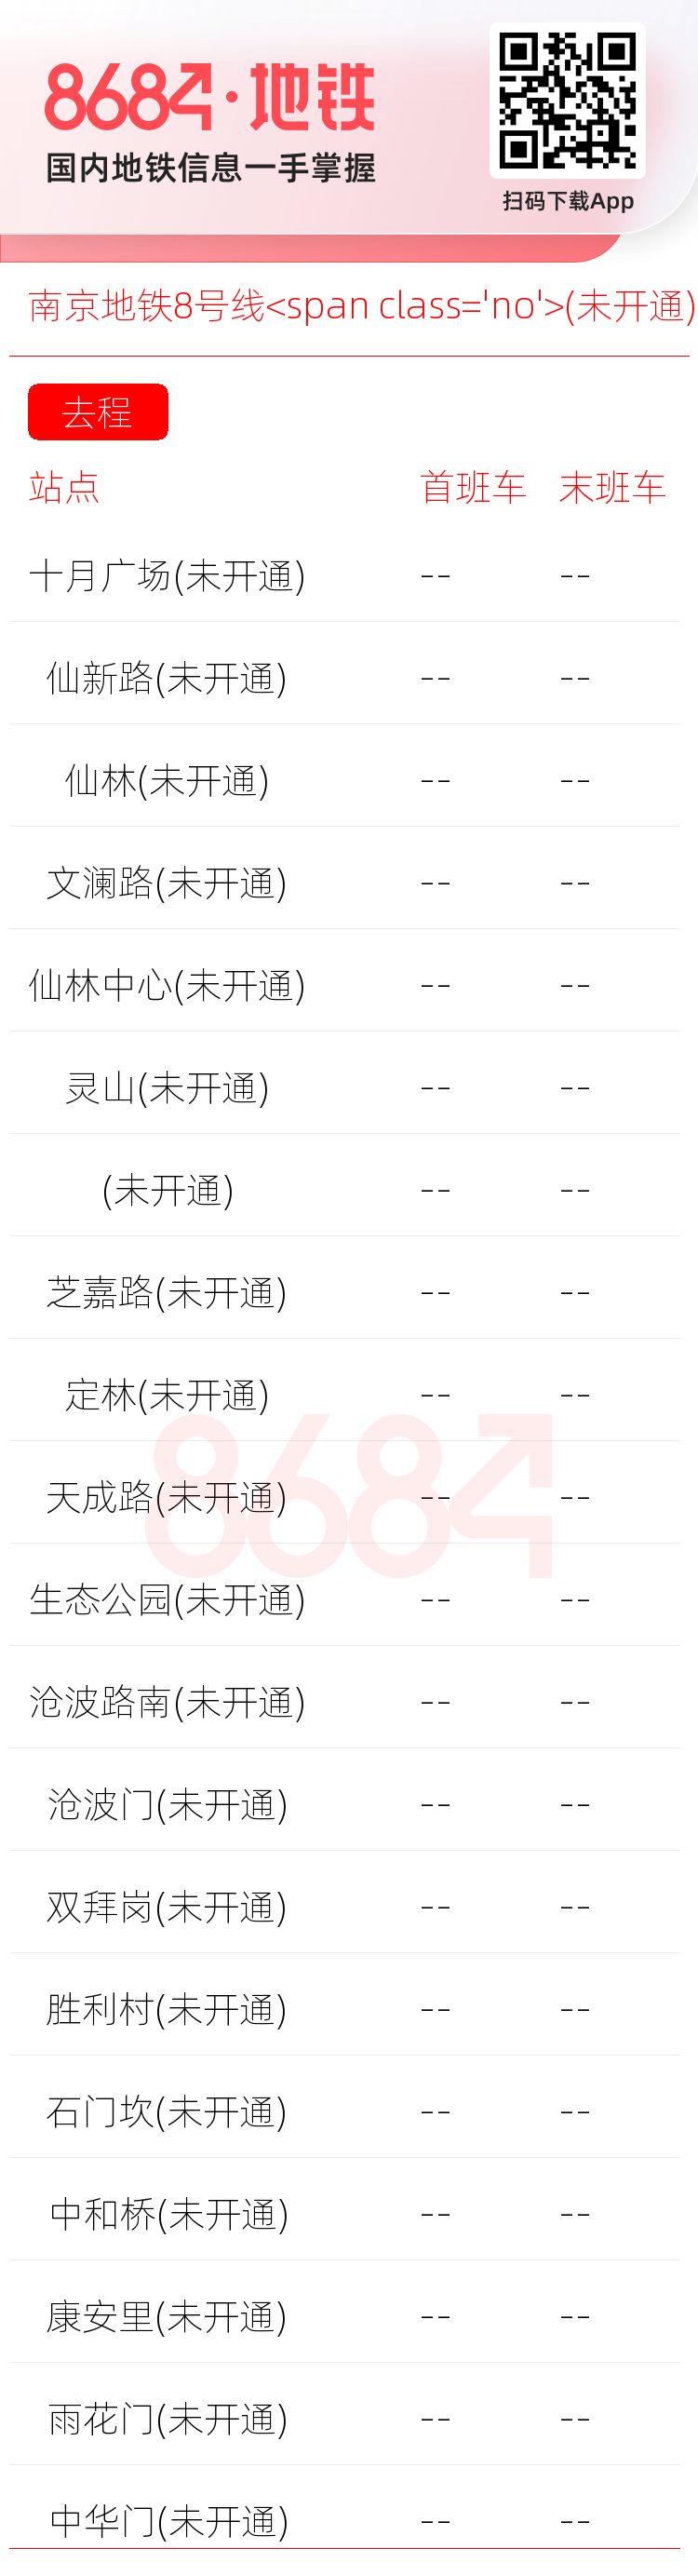 南京地铁8号线<span class='no'>(未开通)</span>运营时间表